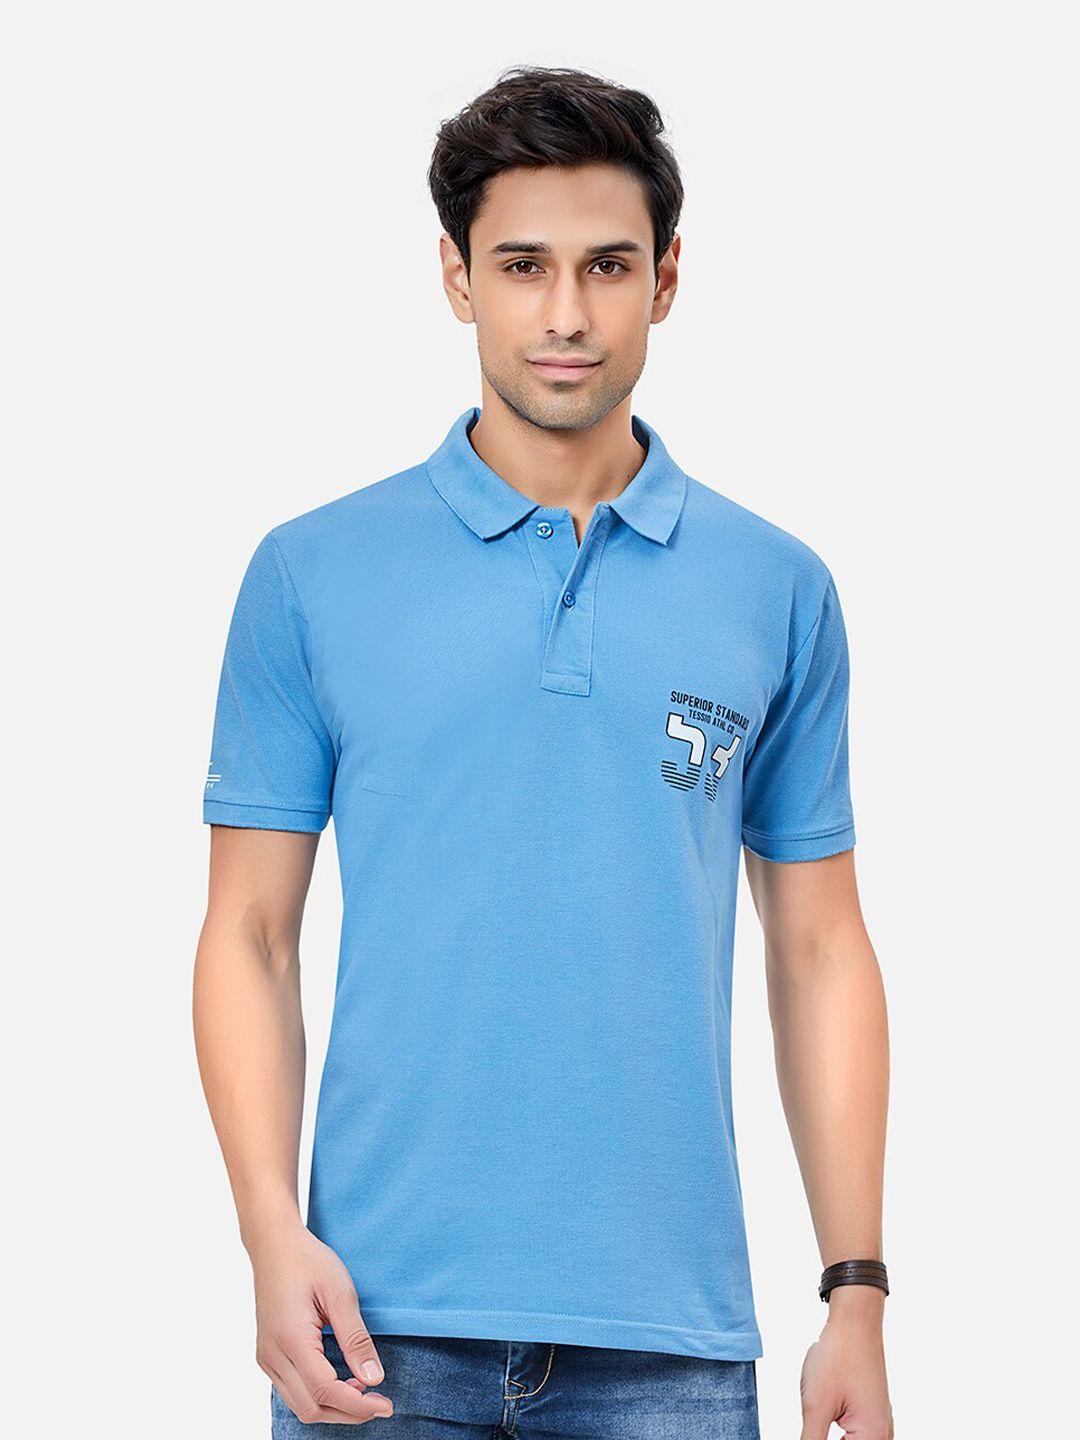 tessio men blue polo collar t-shirt